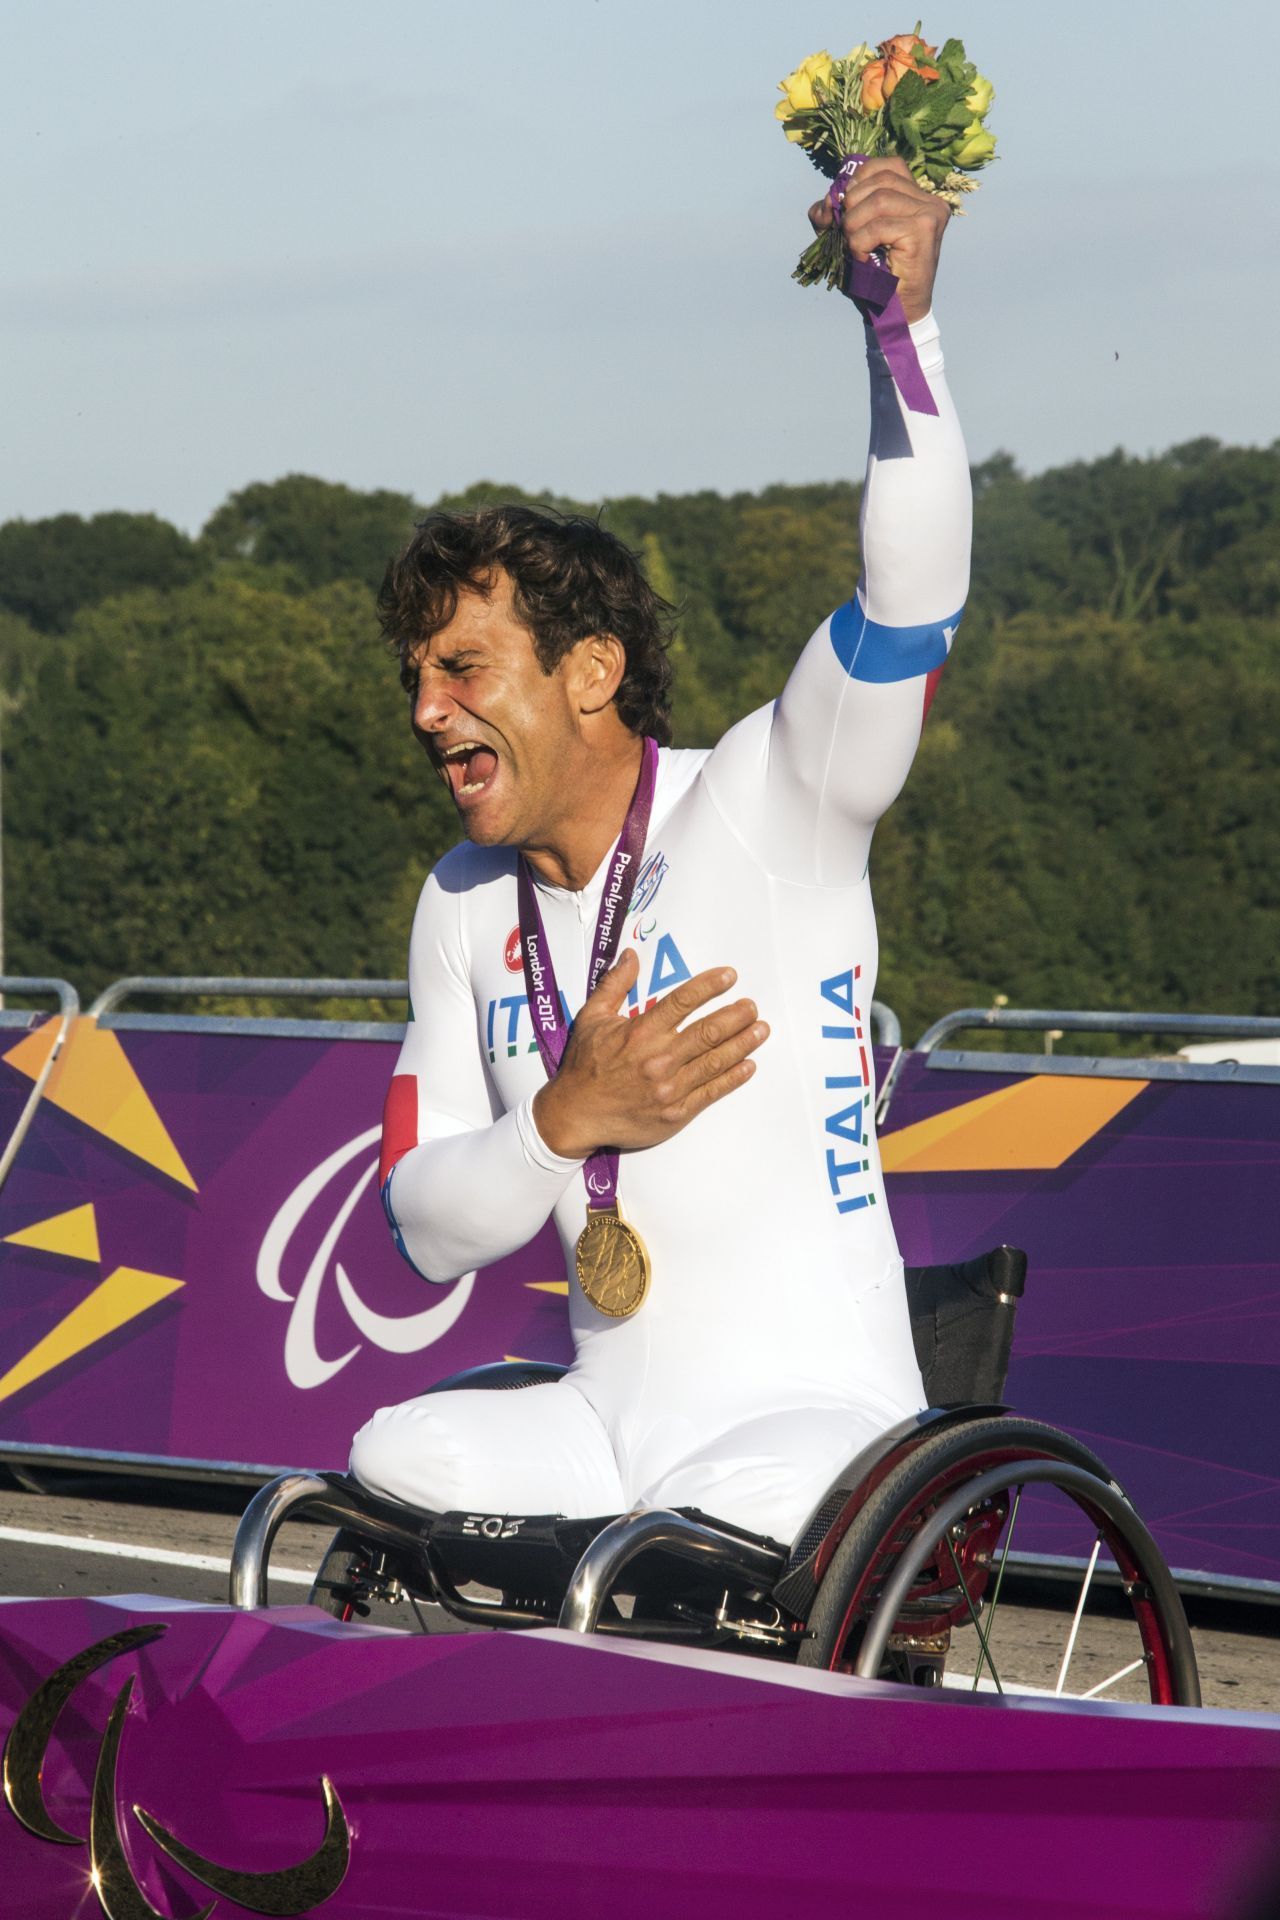 Alex Zanardi fuhr jahrelang Formel-1-Rennen. 2001 verlor er bei einem Unfall beide Beine. Nur 3 Jahre später stieg er wieder ins Rennauto - mit speziell angefertigten Prothesen - und gewann 4 Tourenwagen-WM's. 2007 stieg er auf Radrennen um und entwarf sein eigenes Handbike. Damit gewann er 3 Gold-Medaillen bei den paralympischen Spielen.